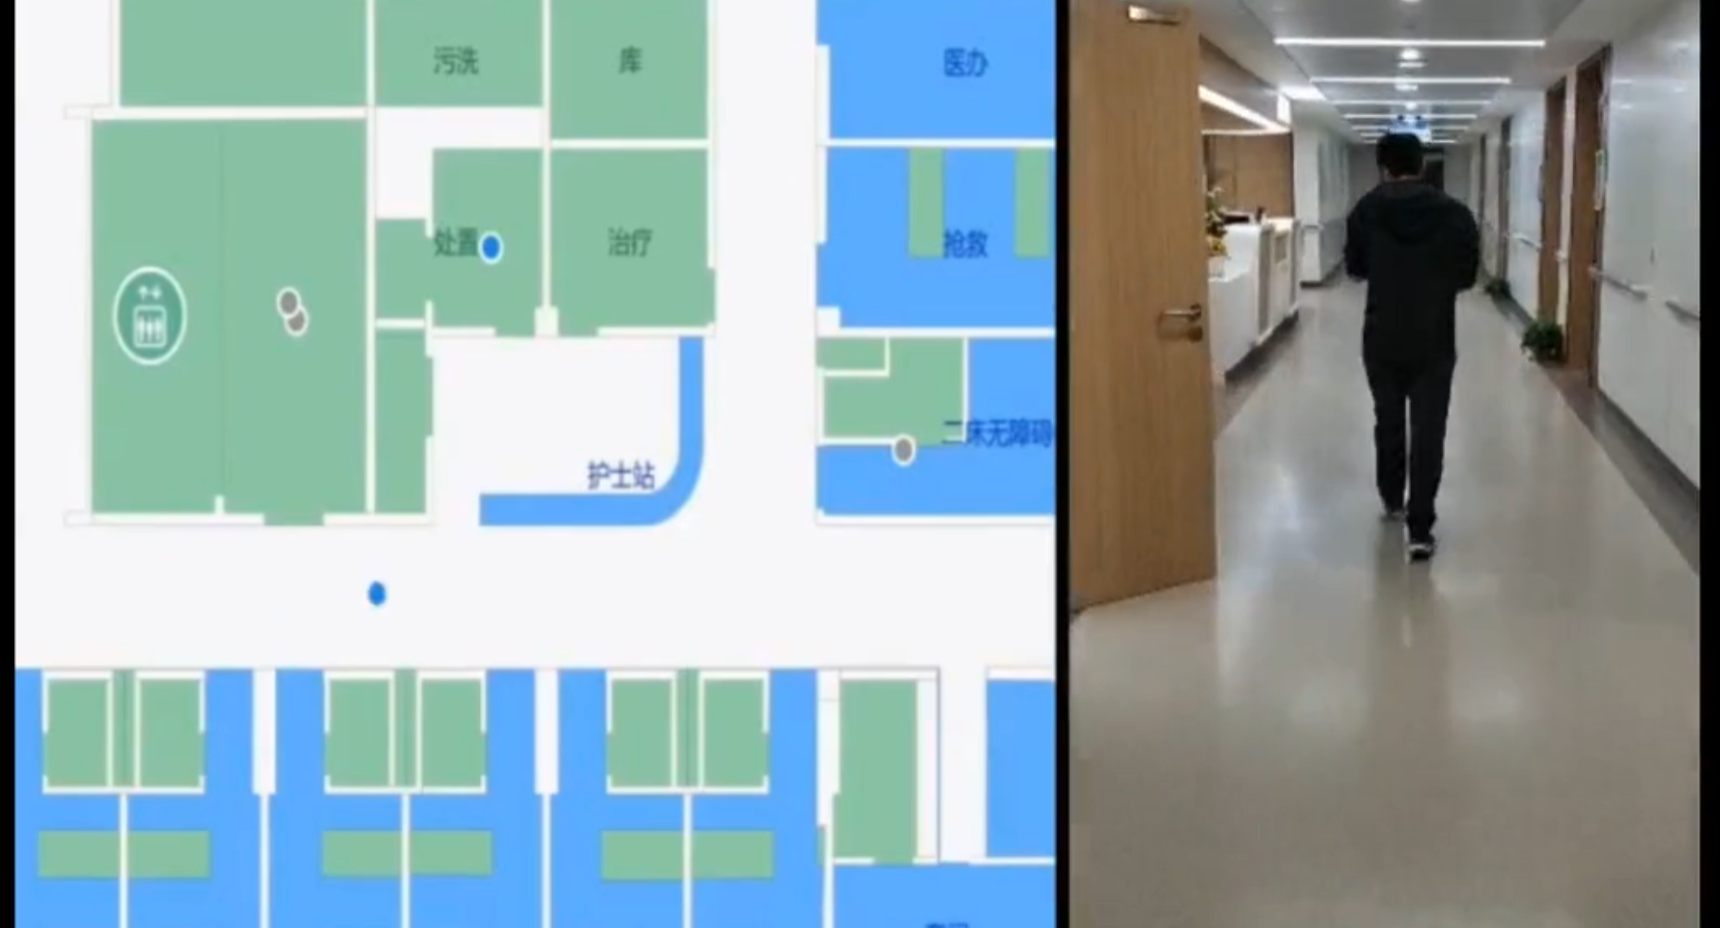 蓝牙AOA定位 智慧医院资产定位 室内导航 同济大学附属医院室内导航案例视频